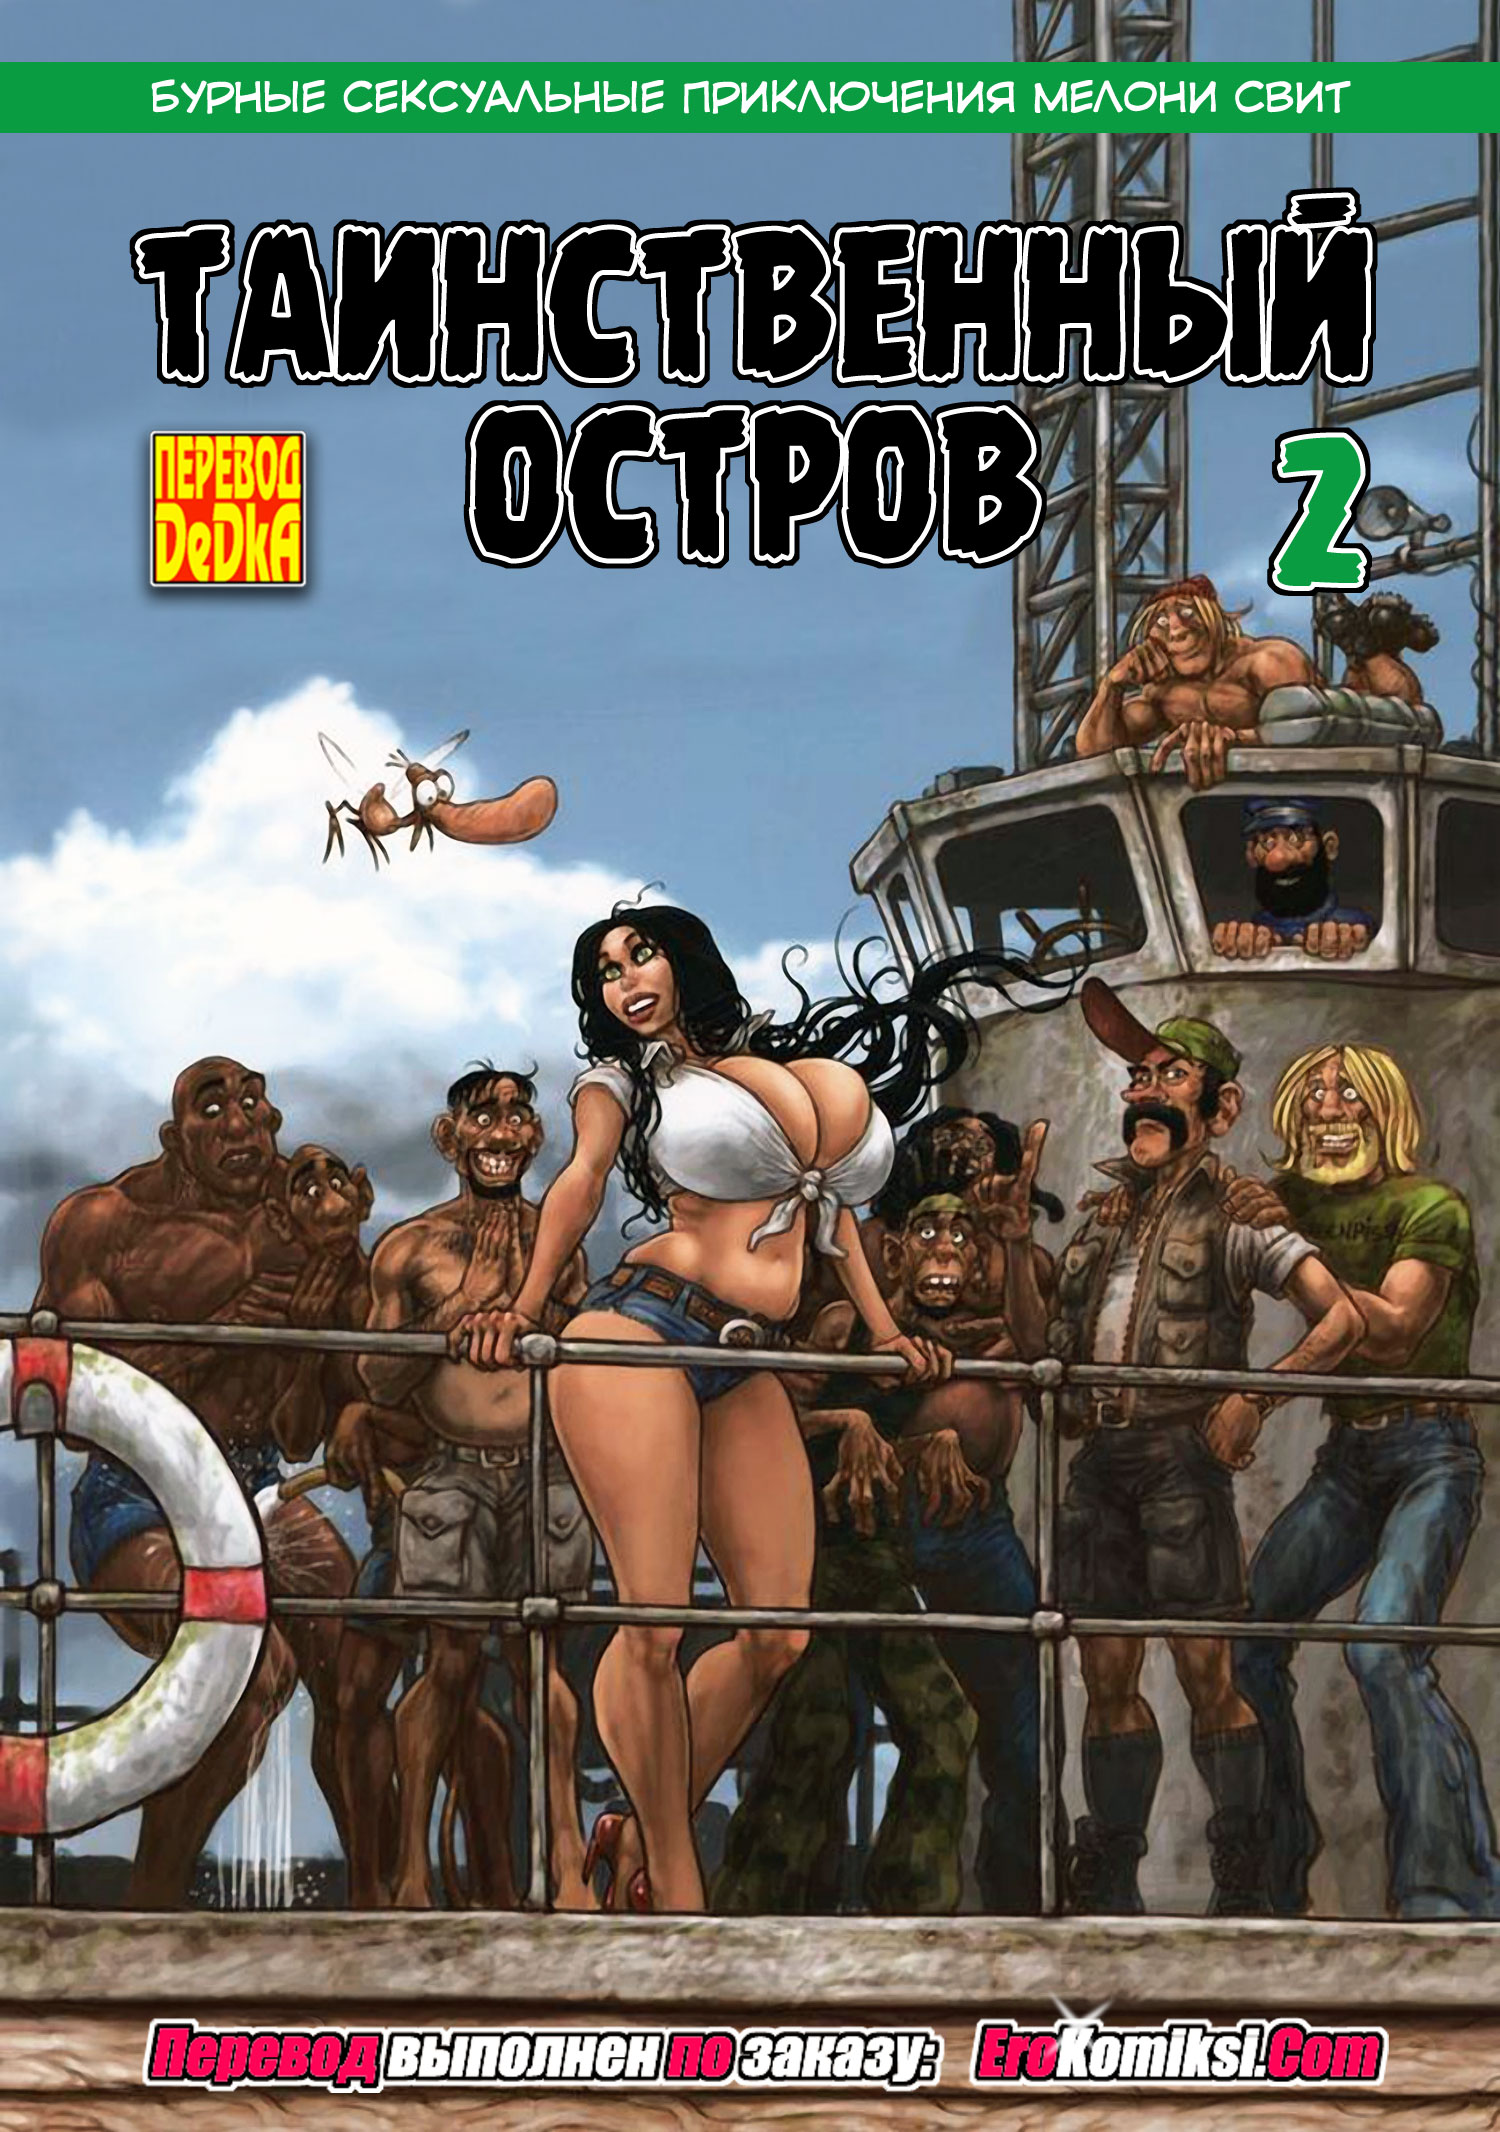 Порно комиксы на русском ▷ онлайн бесплатно